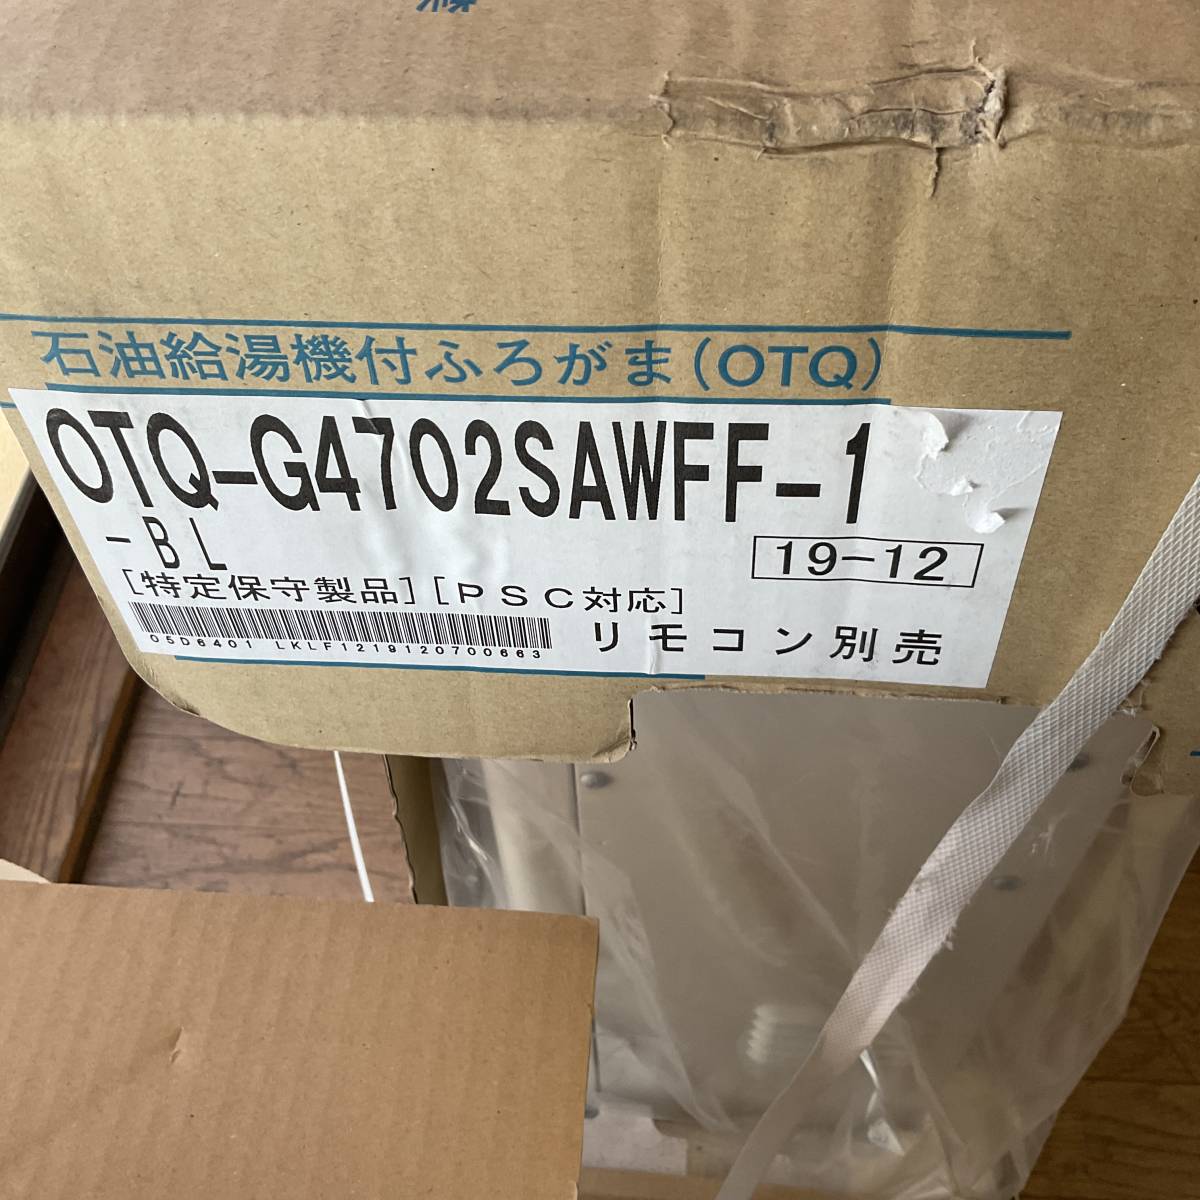 ノーリツ　石油給湯器　オート　OTQ-G4702SAWFF　リモコン別売り_画像3